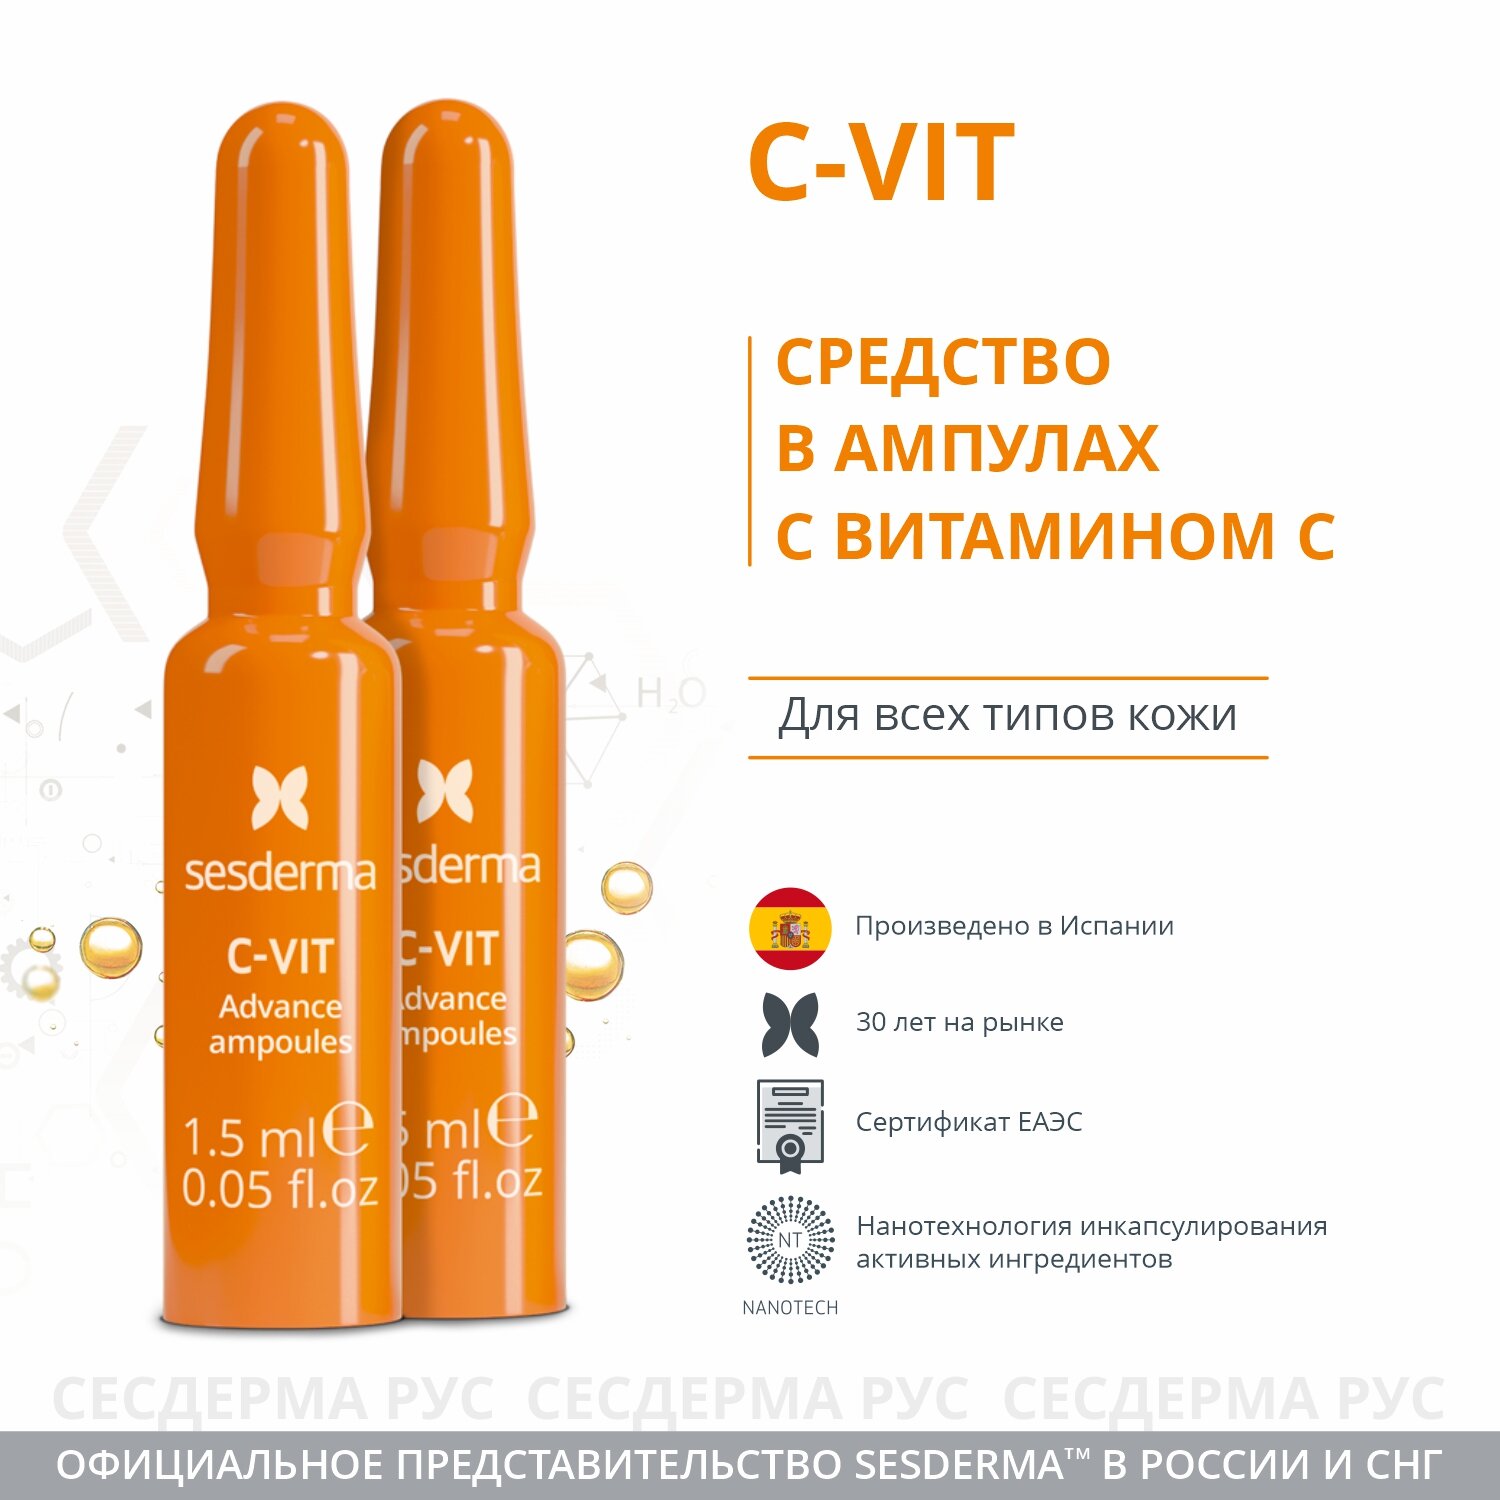 C-VIT Ampoules – Средство в ампулах с витамином С, 10 шт по 1,5 мл